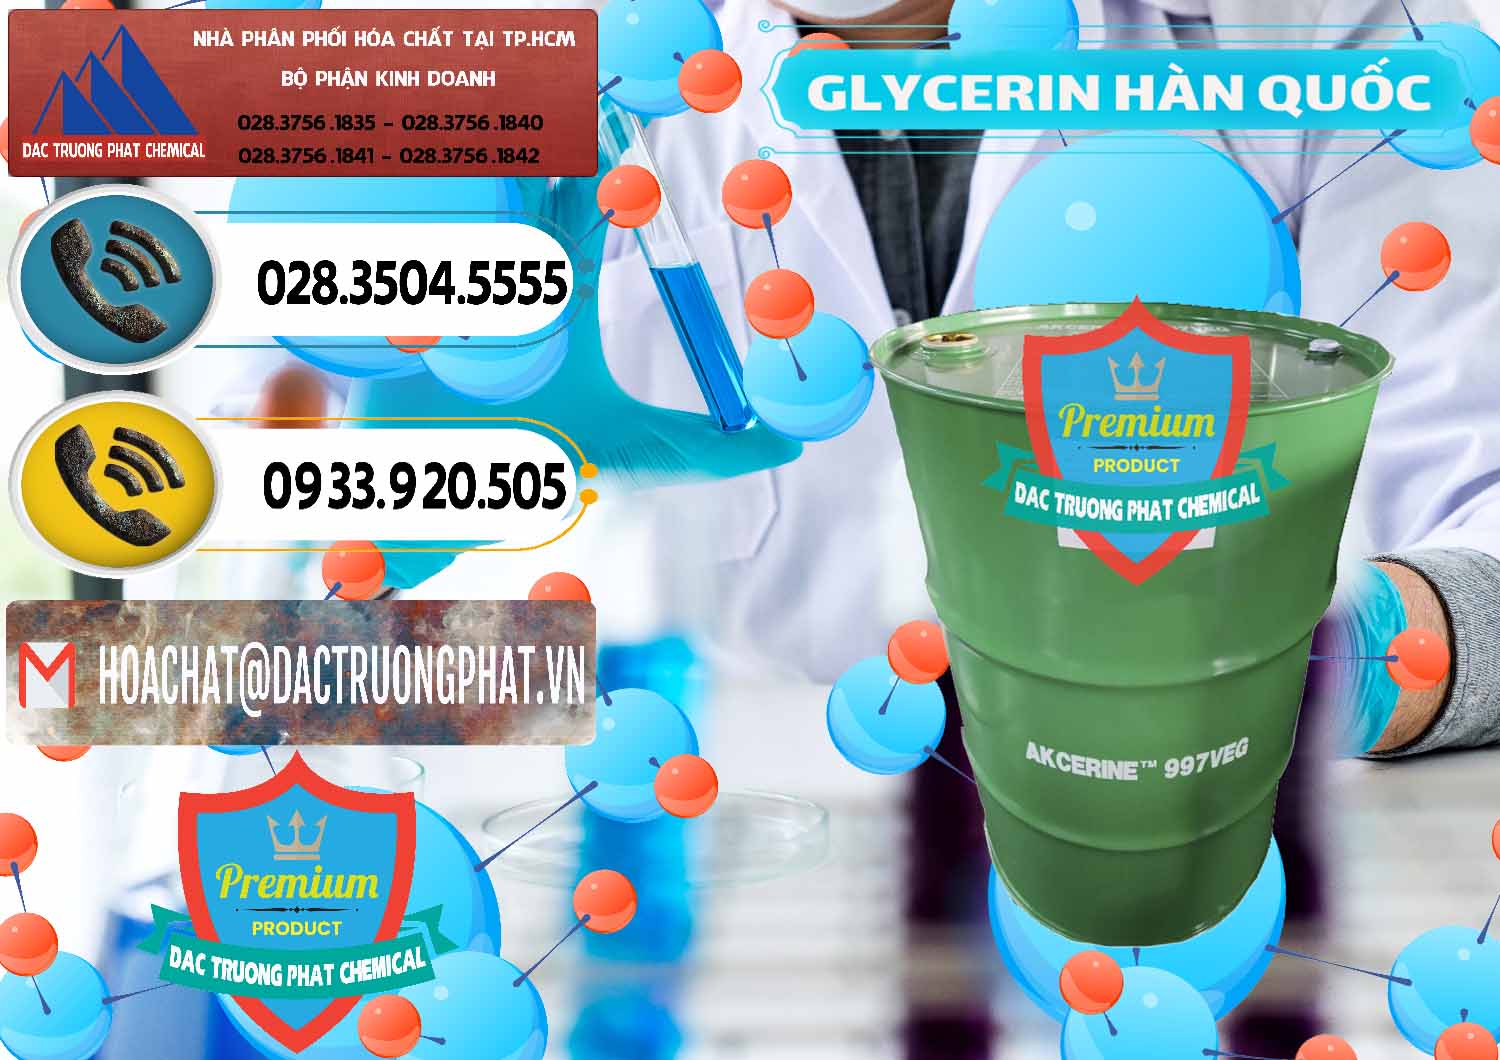 Đơn vị bán _ cung cấp Glycerin – C3H8O3 Hàn Quốc Korea - 0403 - Cty chuyên phân phối & cung ứng hóa chất tại TP.HCM - hoachatdetnhuom.vn